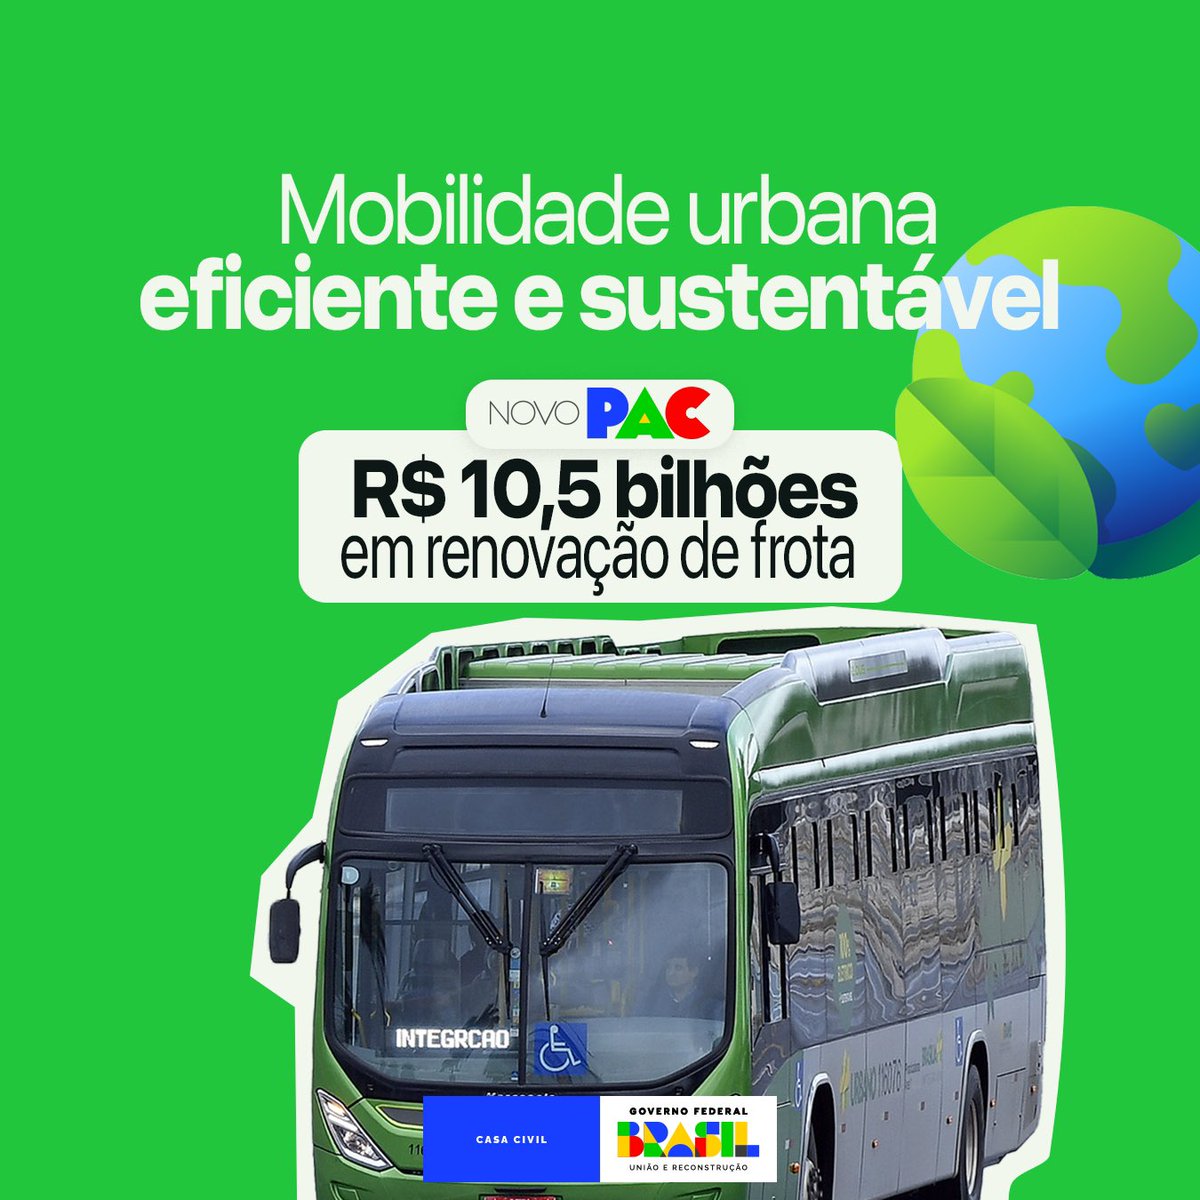 O #NovoPAC investe na aquisição de 2.529 ônibus elétricos, 2.782 Euro 6 e 39 veículos sob trilhos. Os novos veículos integram eficiência energética e baixo consumo de combustível, contribuindo com a redução das emissões de CO2 e com a qualidade de vida nas cidades brasileiras.